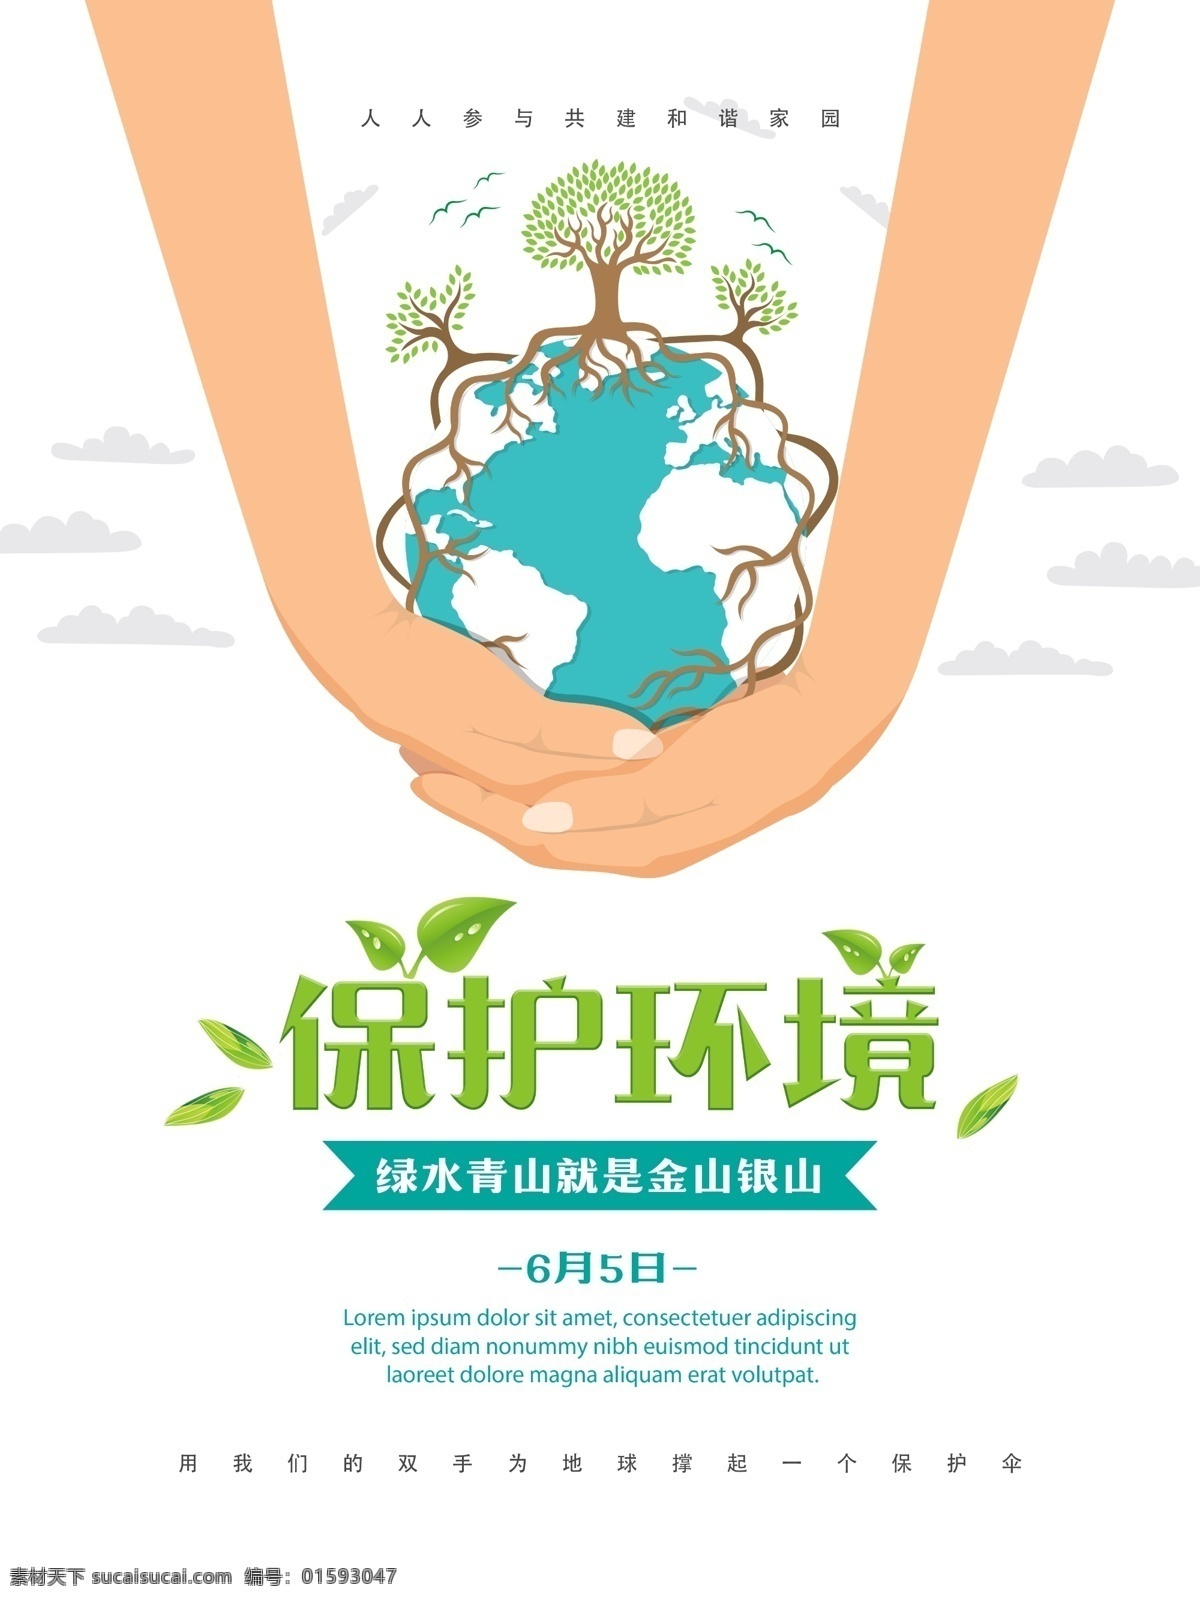 世界环境日 保护 环境 宣传海报 2017 6月5日 国际环境日 公益 地球 保护环境 爱护环境 生态环境 保护地球 地球日 环保 环保海报 环境保护 绿色